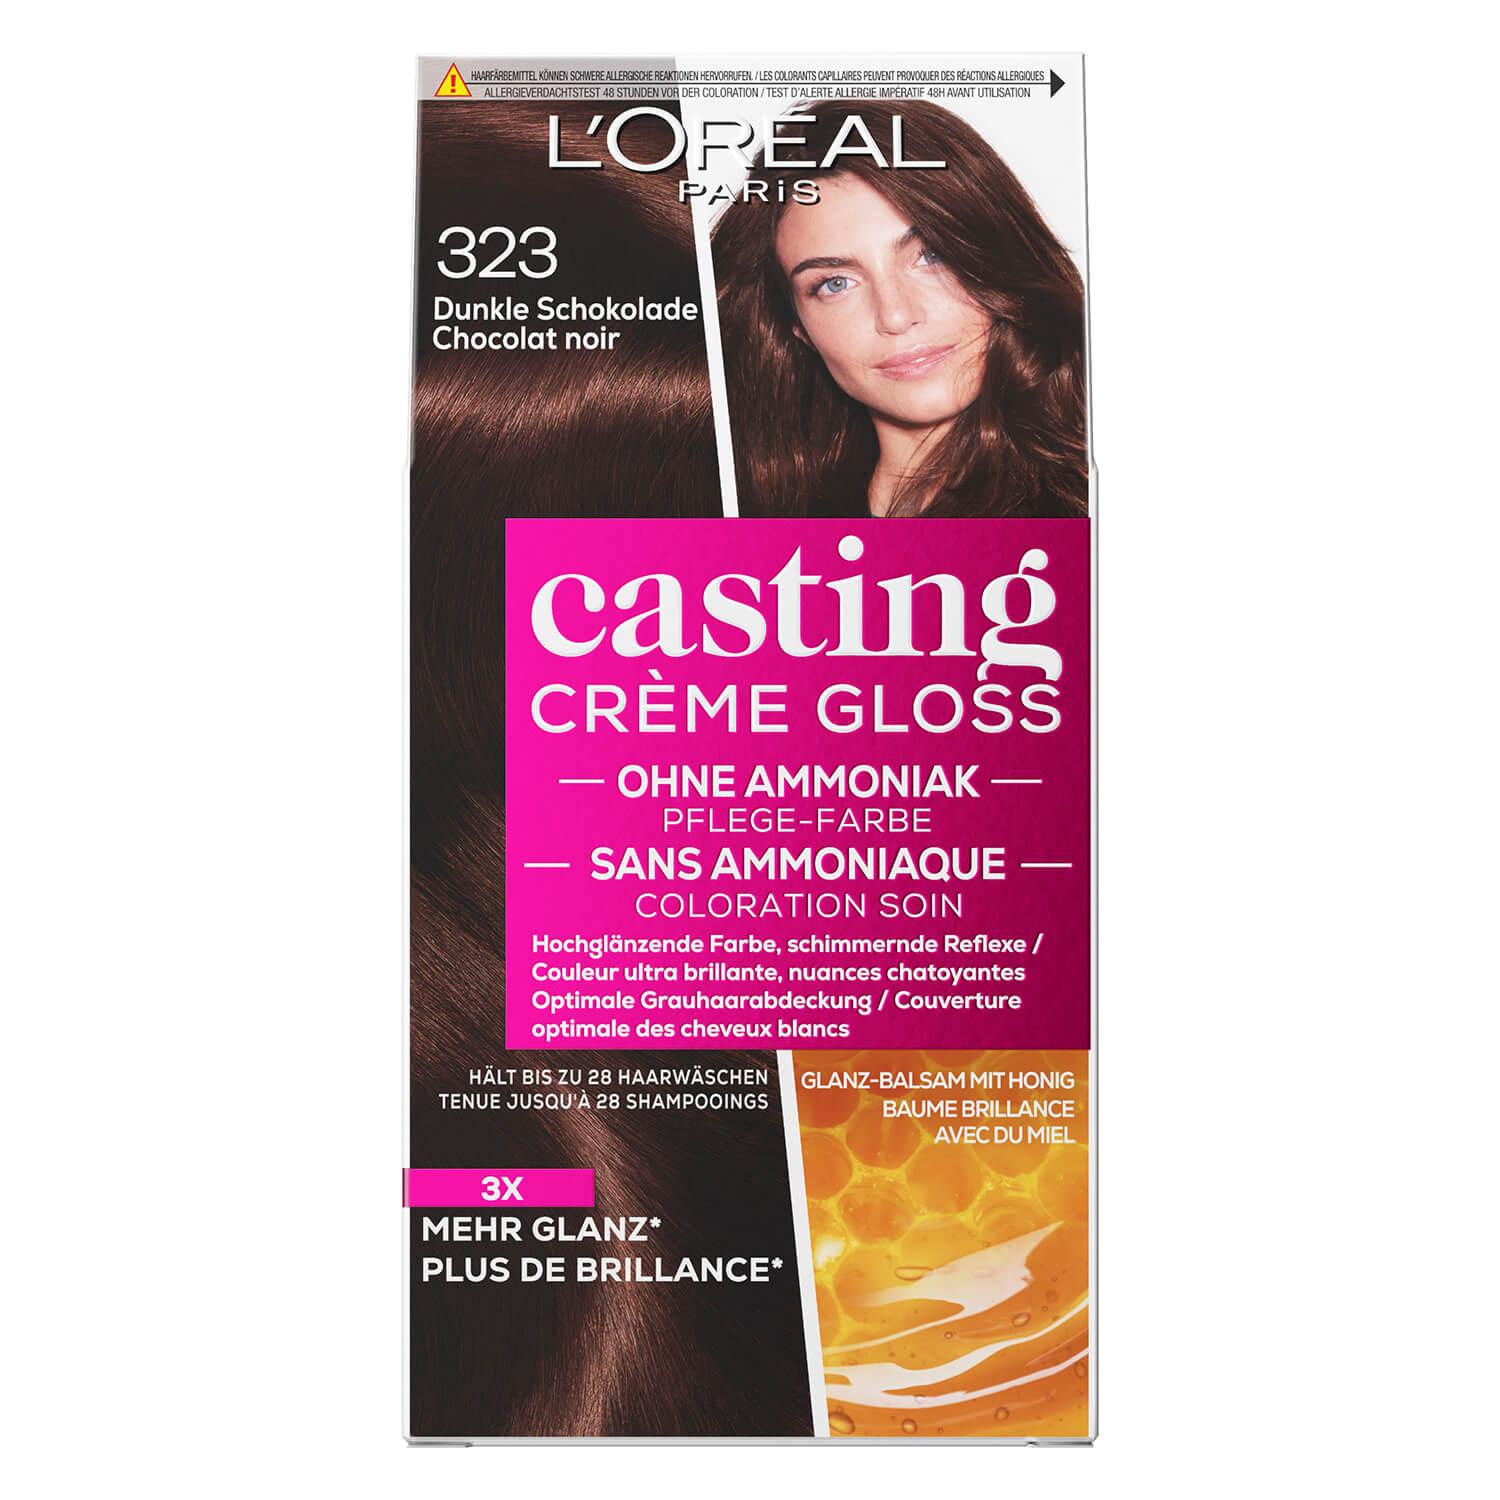 LOréal Casting - Crème Gloss 323 Dunkle Schokolade